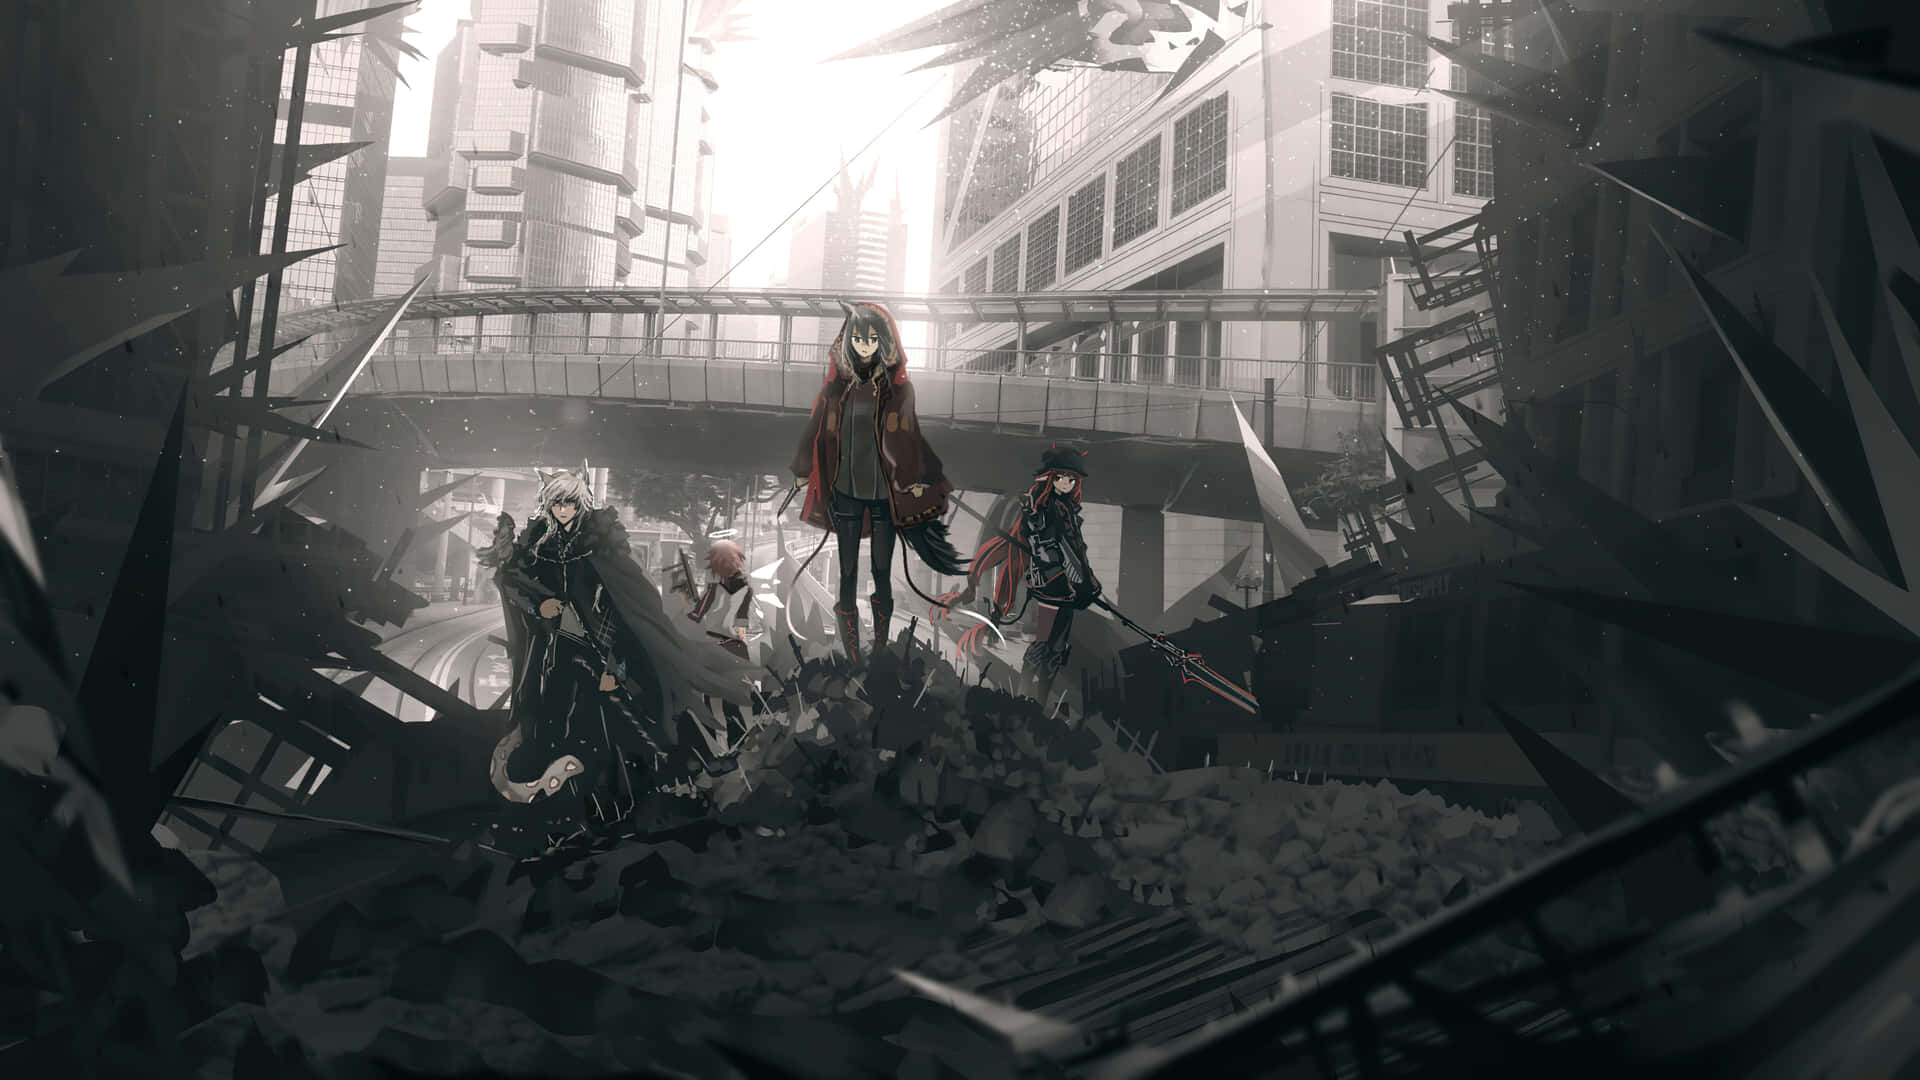 En gruppe mennesker står i en by med meget affald og biler der brænder i baggrunden. Wallpaper